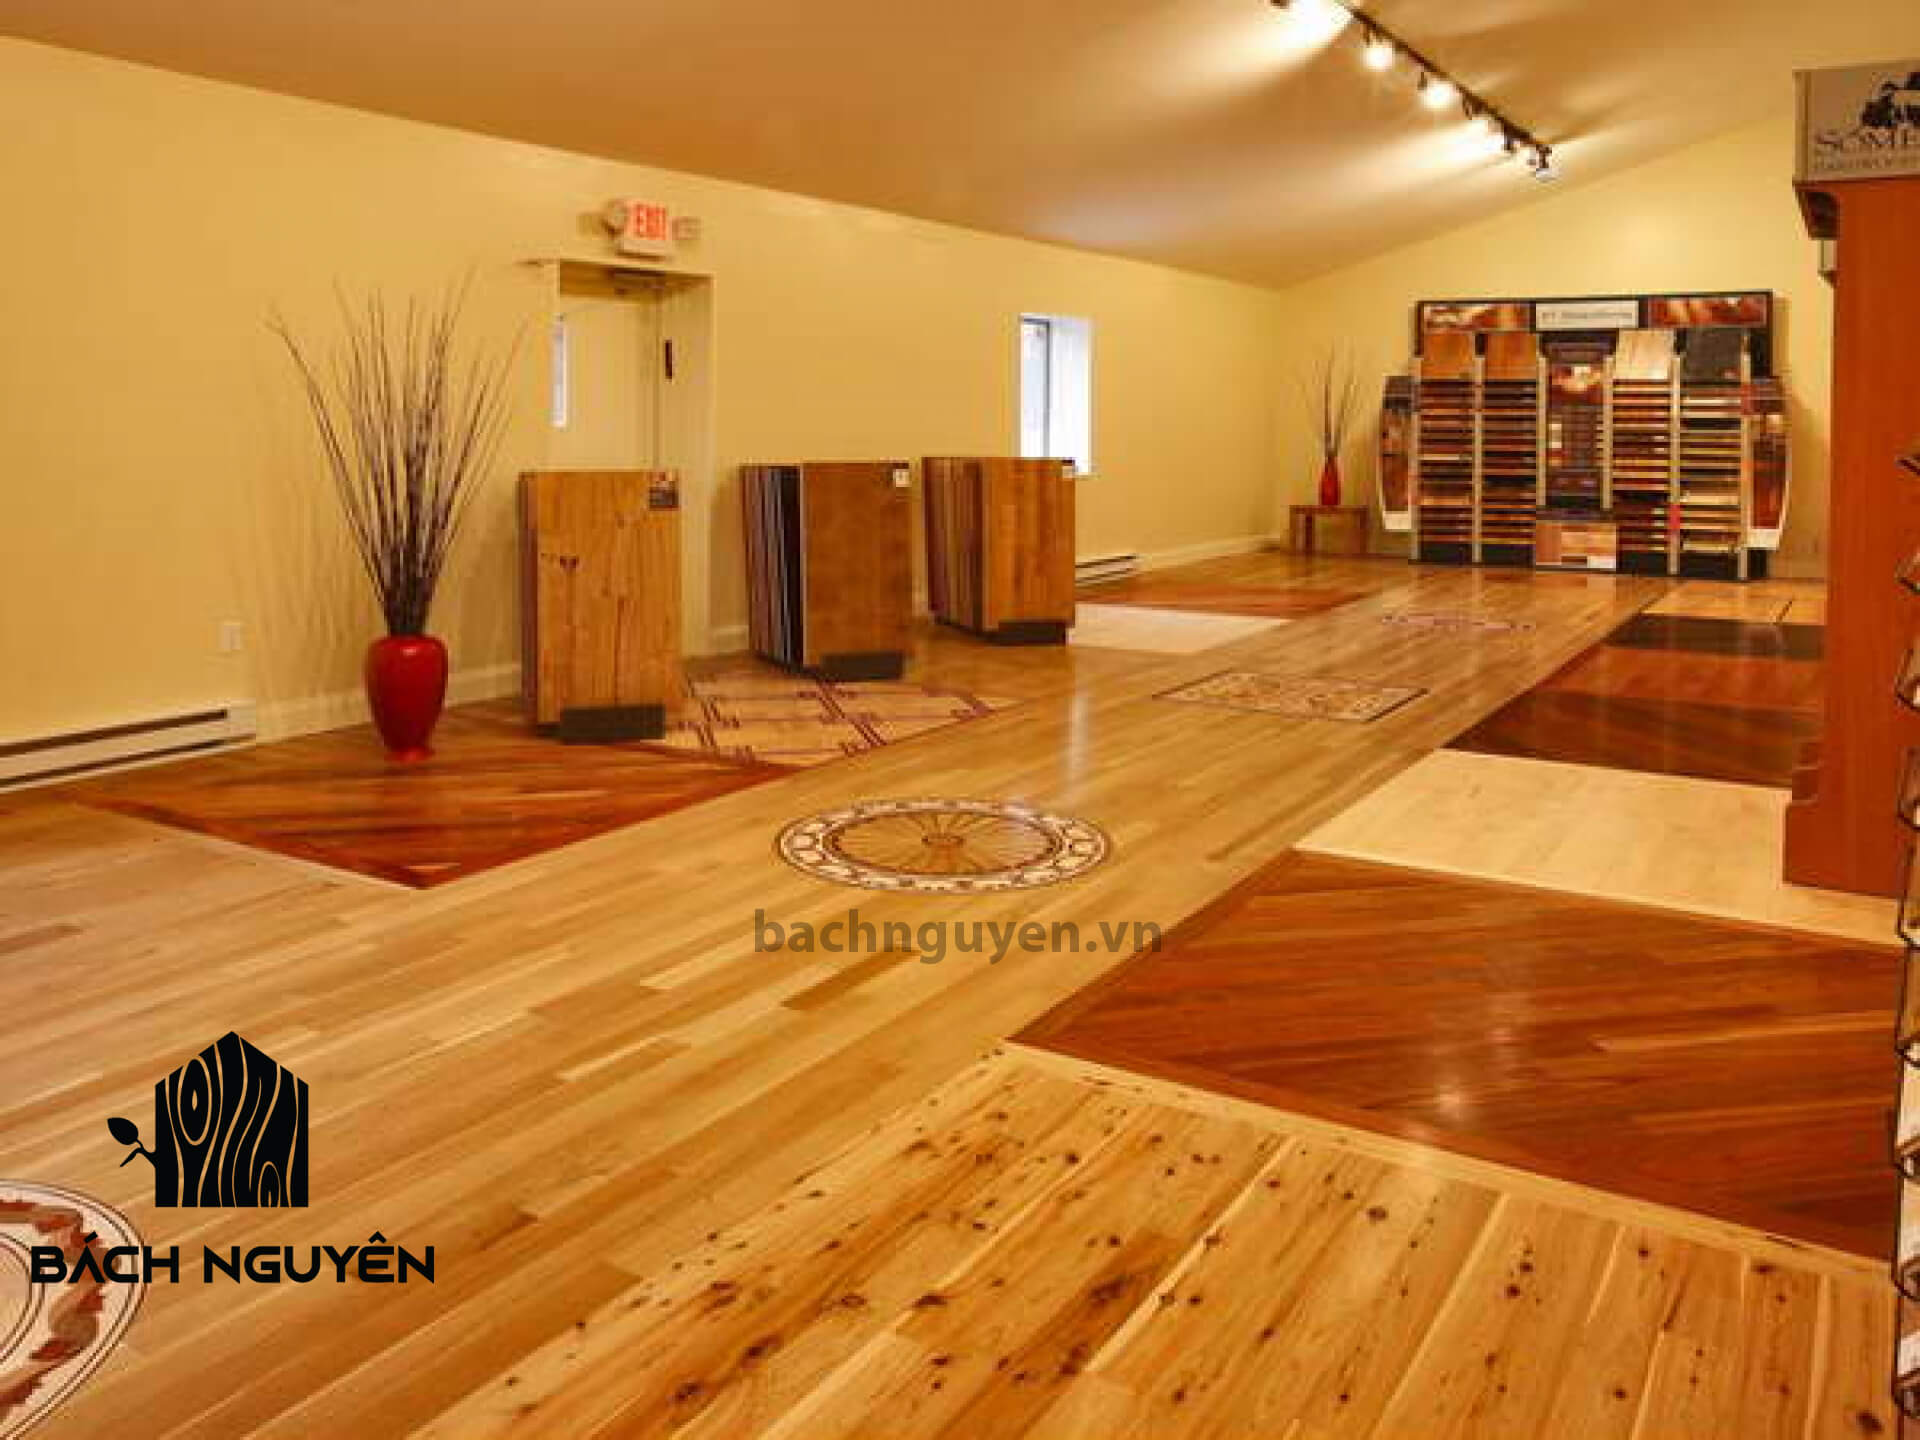 Sàn gỗ tự nhiên trở thành phương án lý tưởng cho những nhà thiết kế nội thất đang tìm kiếm một giải pháp chất lượng và bền vững cho nội thất của họ. Với các tính năng bền, đẹp và dễ bảo trì, sàn gỗ tự nhiên là lựa chọn lý tưởng cho các không gian sống sang trọng và ấm cúng. Hãy truy cập để xem những hình ảnh đẹp về sàn gỗ tự nhiên và lấy cảm hứng cho ngôi nhà của bạn.